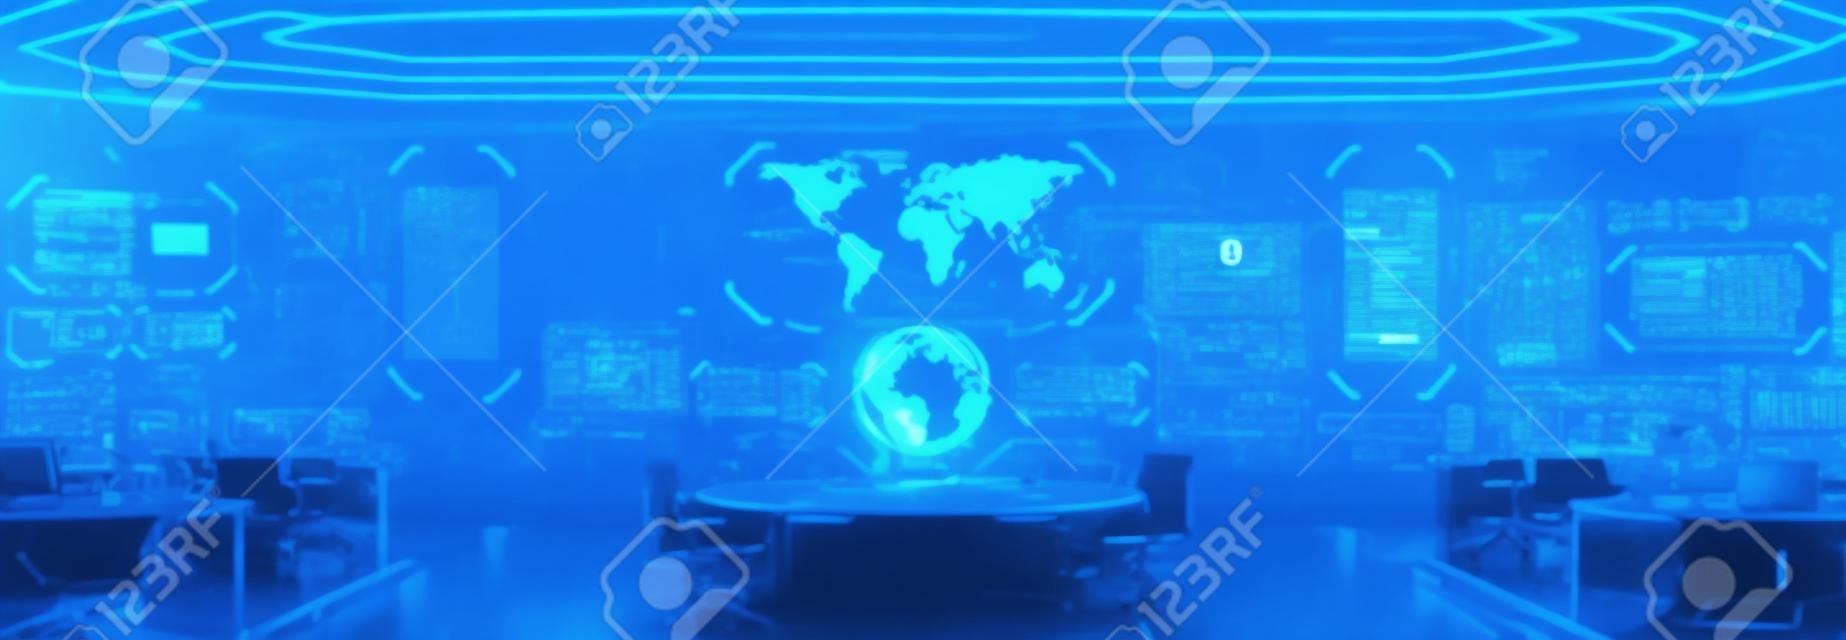 Kommandozentrale Interieur, Cybersicherheit, Raum, blau